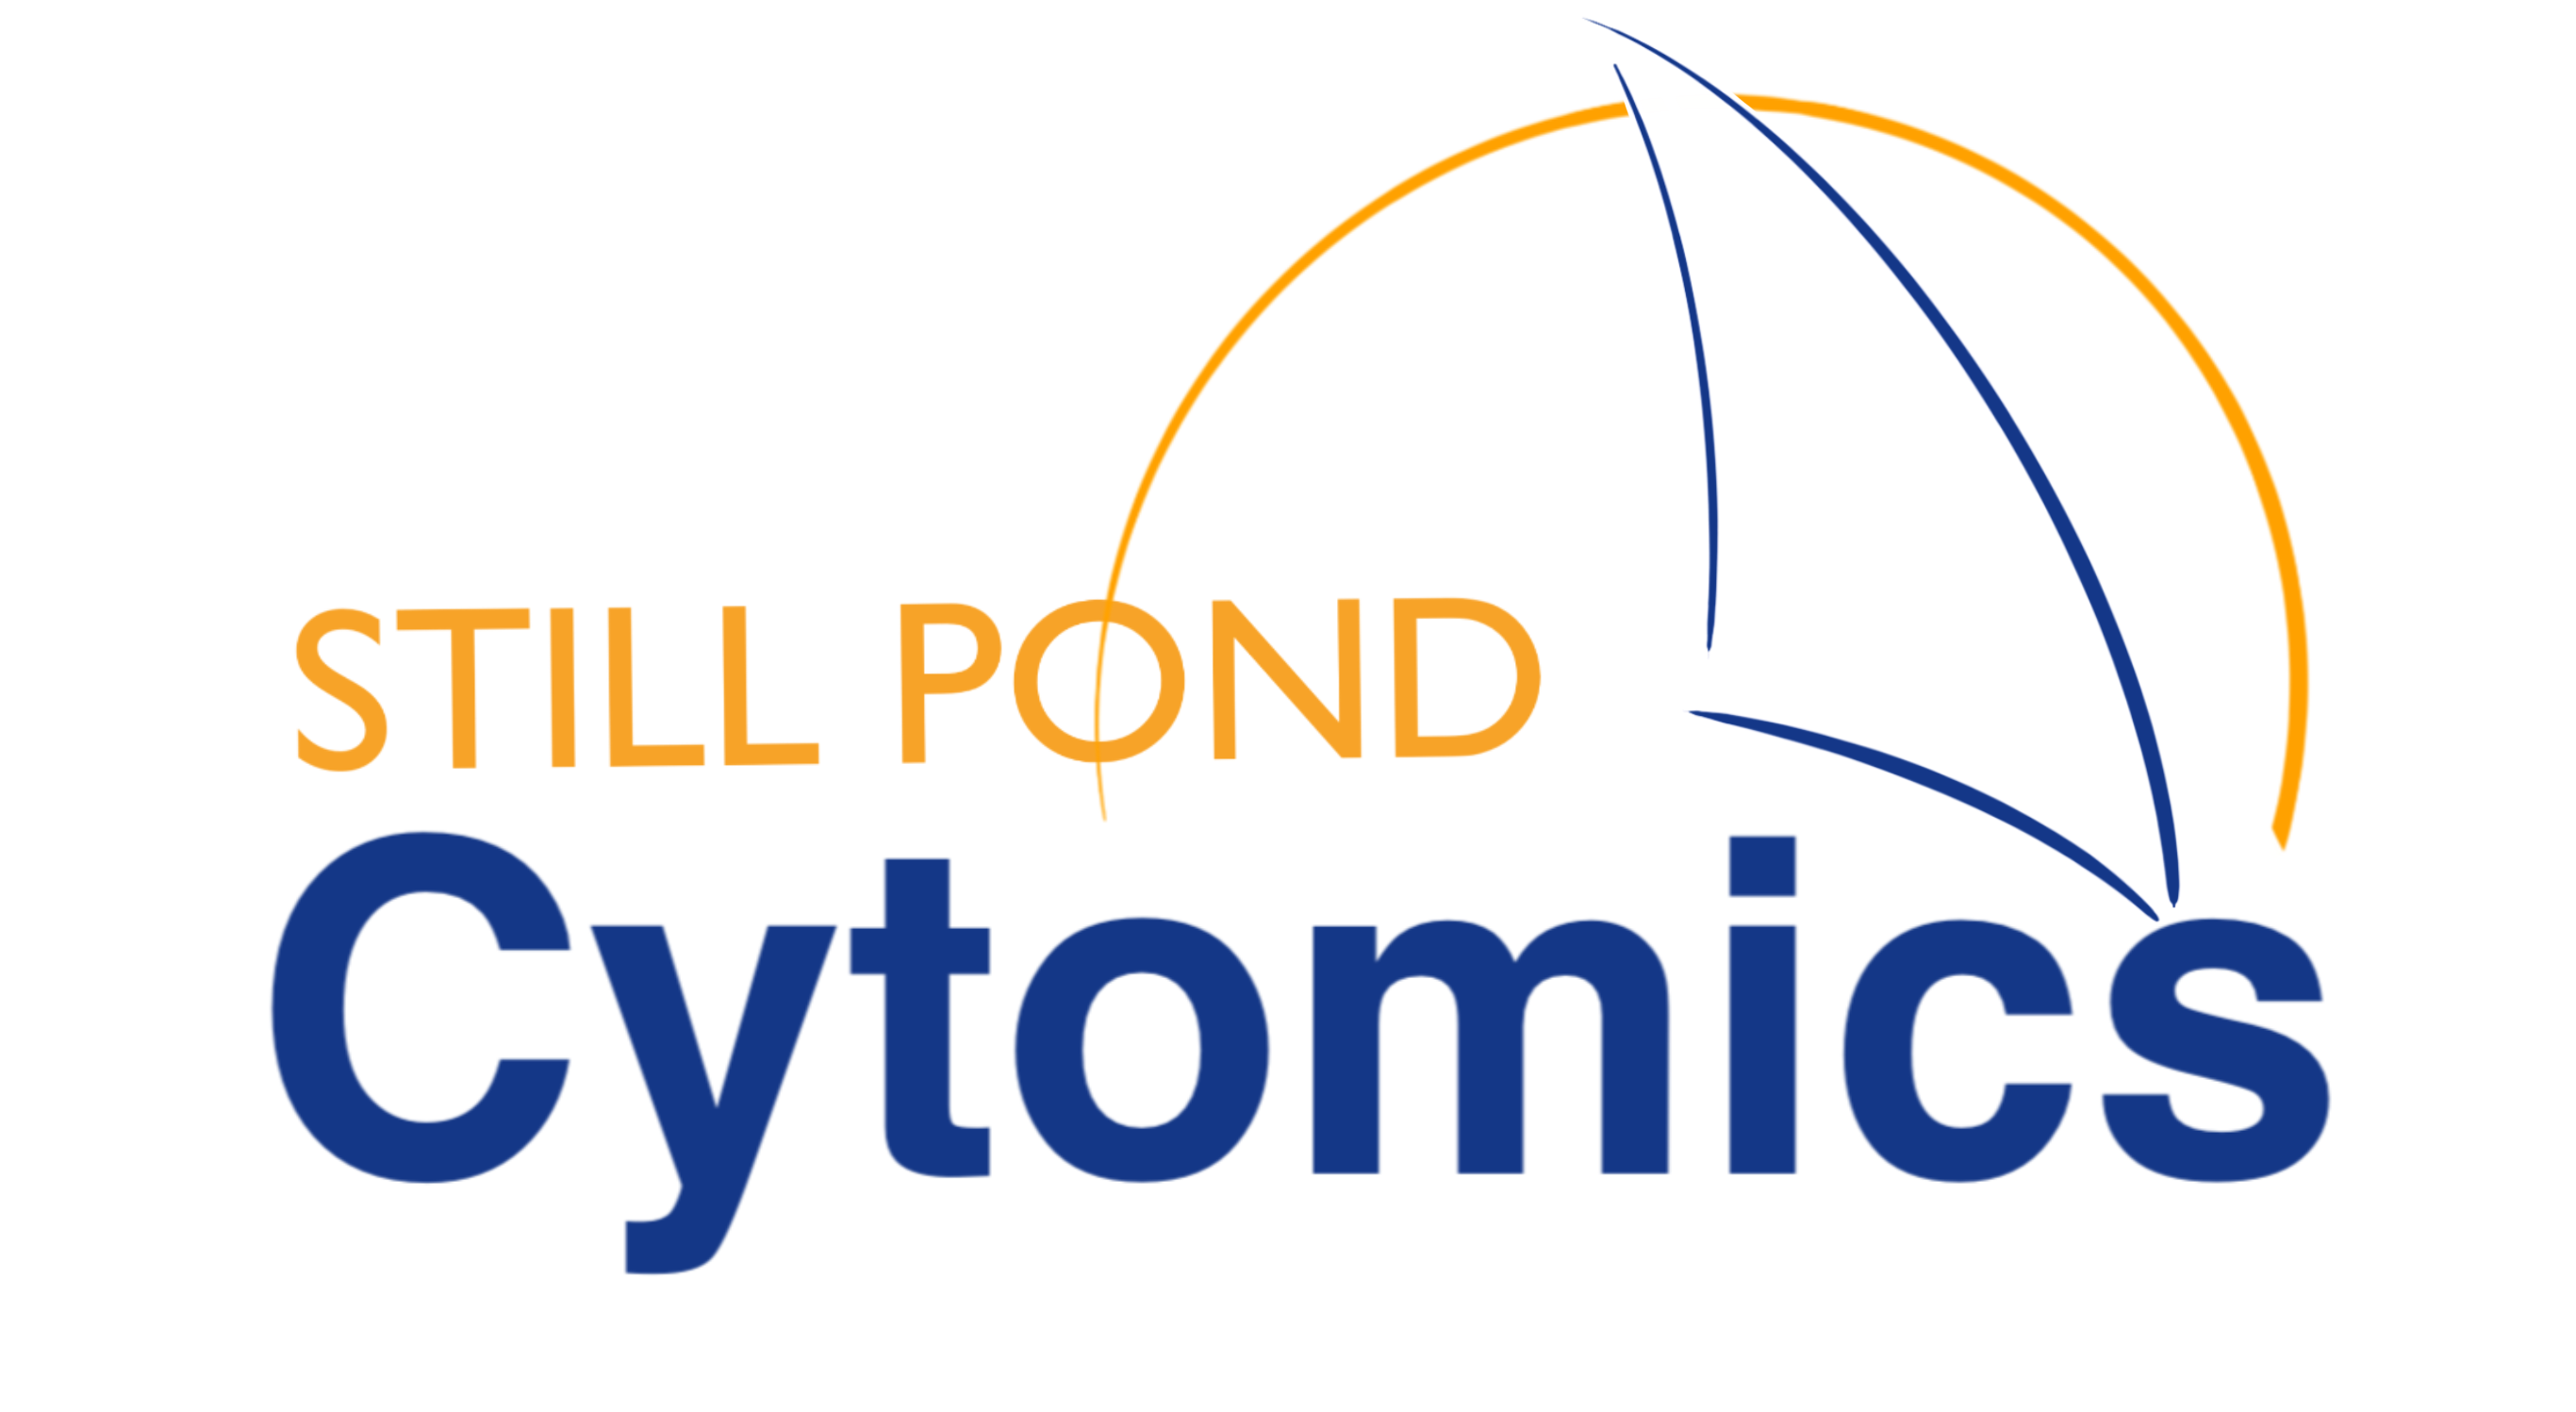 Still Pond Cytomics